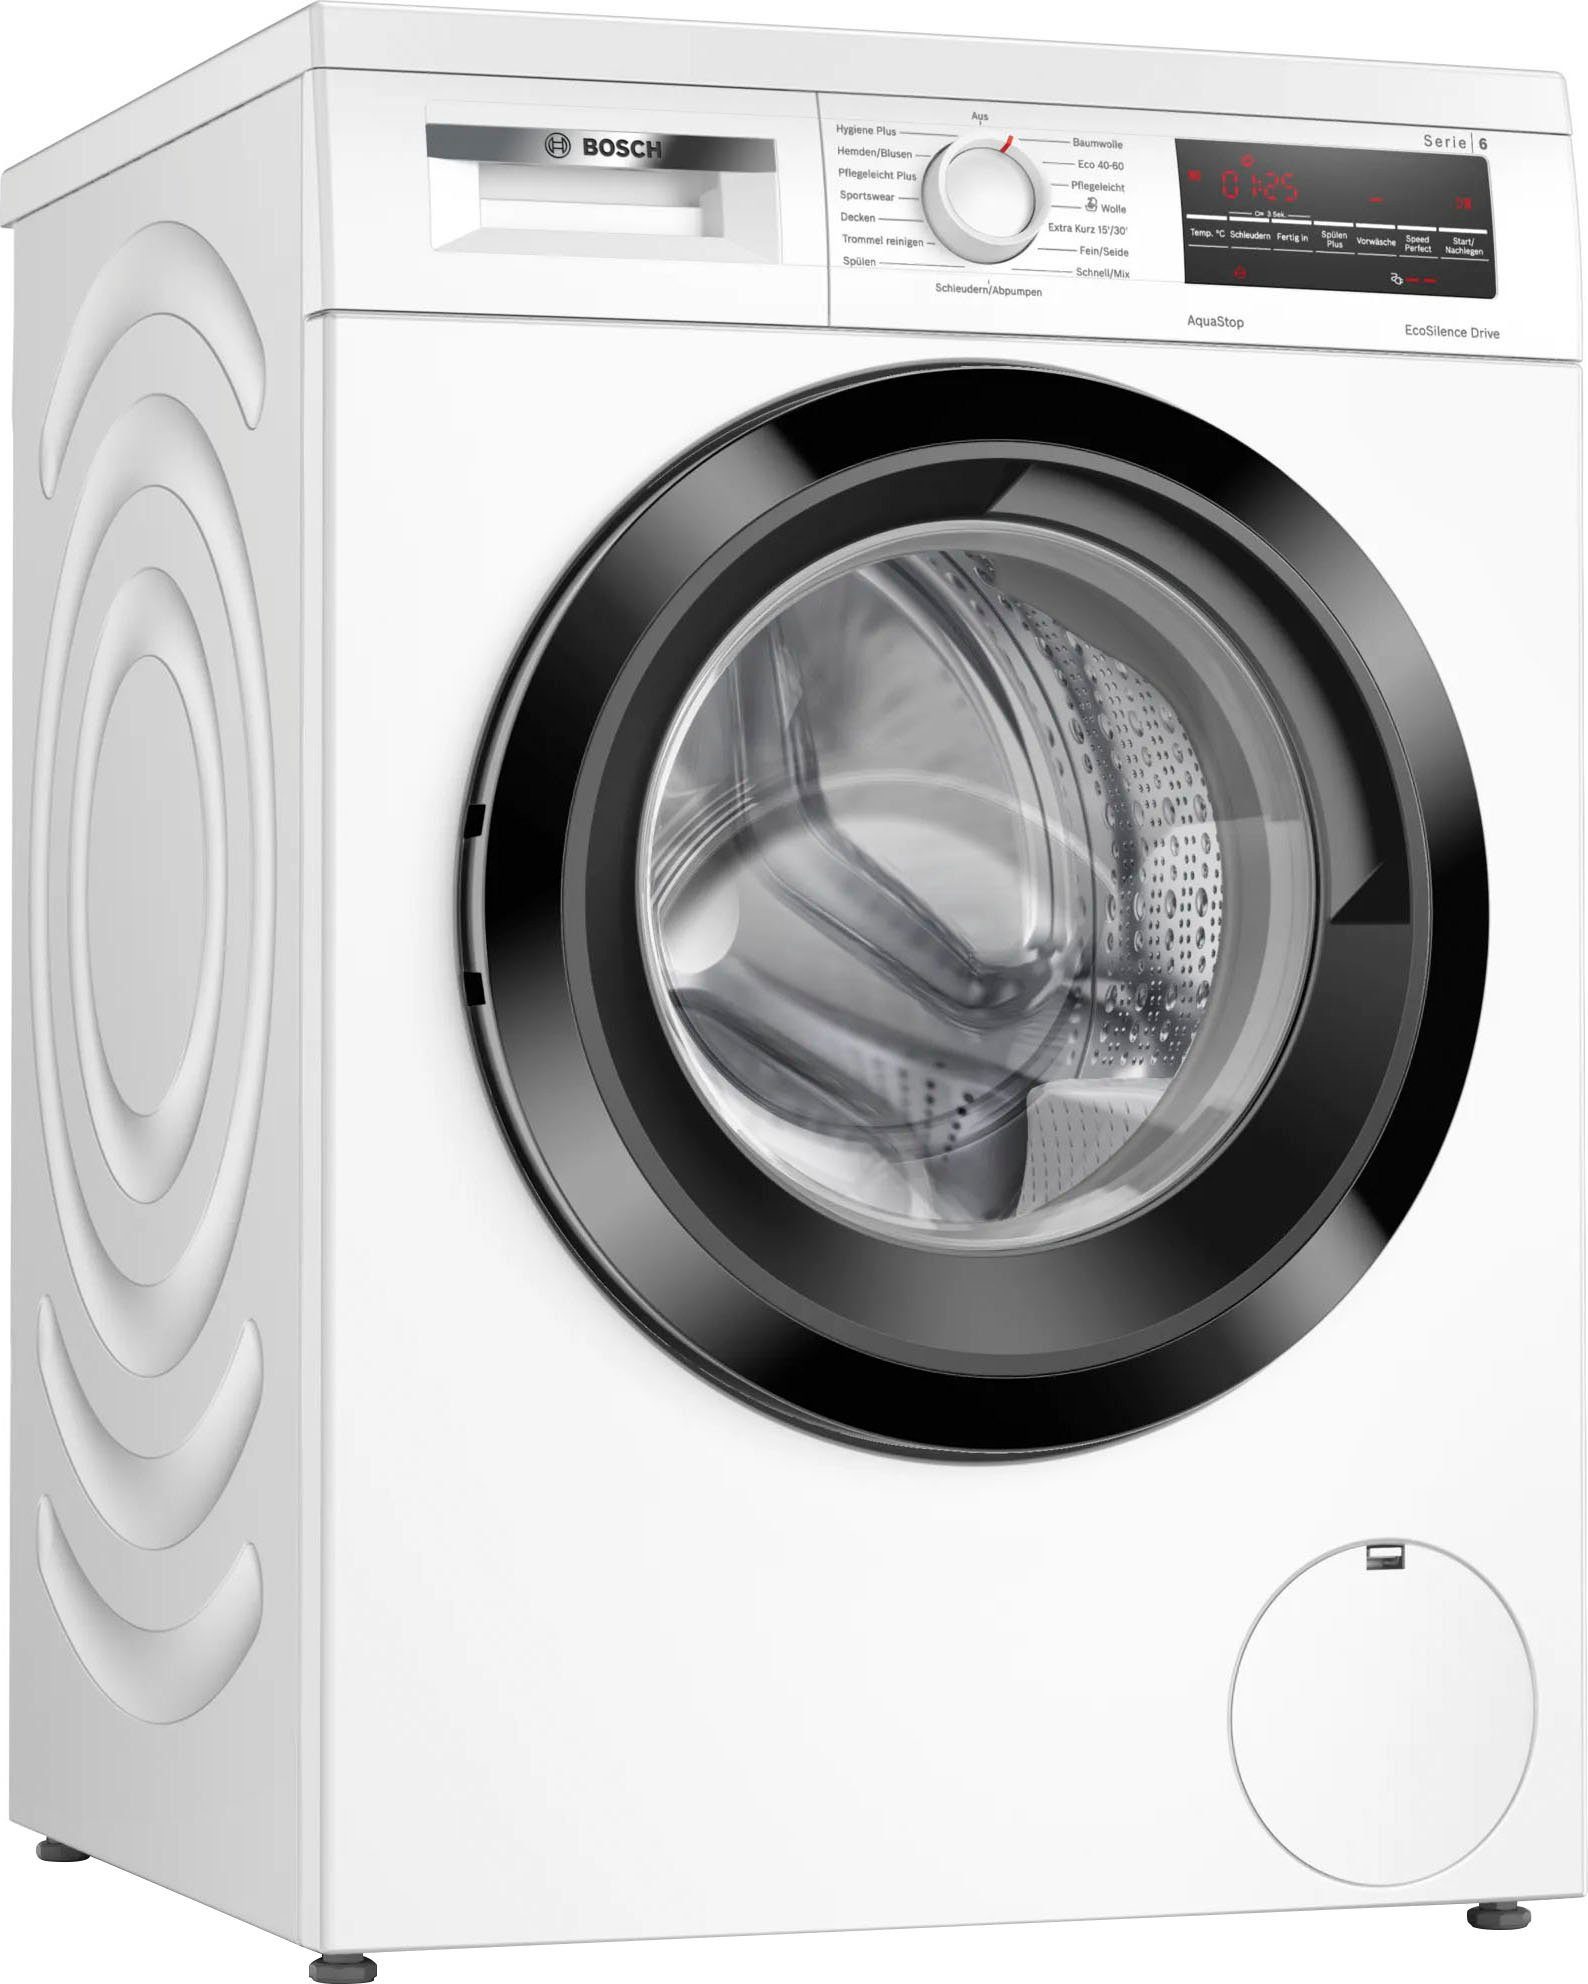 BOSCH Waschmaschine WUU28T48, 8 kg, 1400 U/min, Hygiene Plus: hygienisches  und sauber waschen auch bei bei | Frontlader